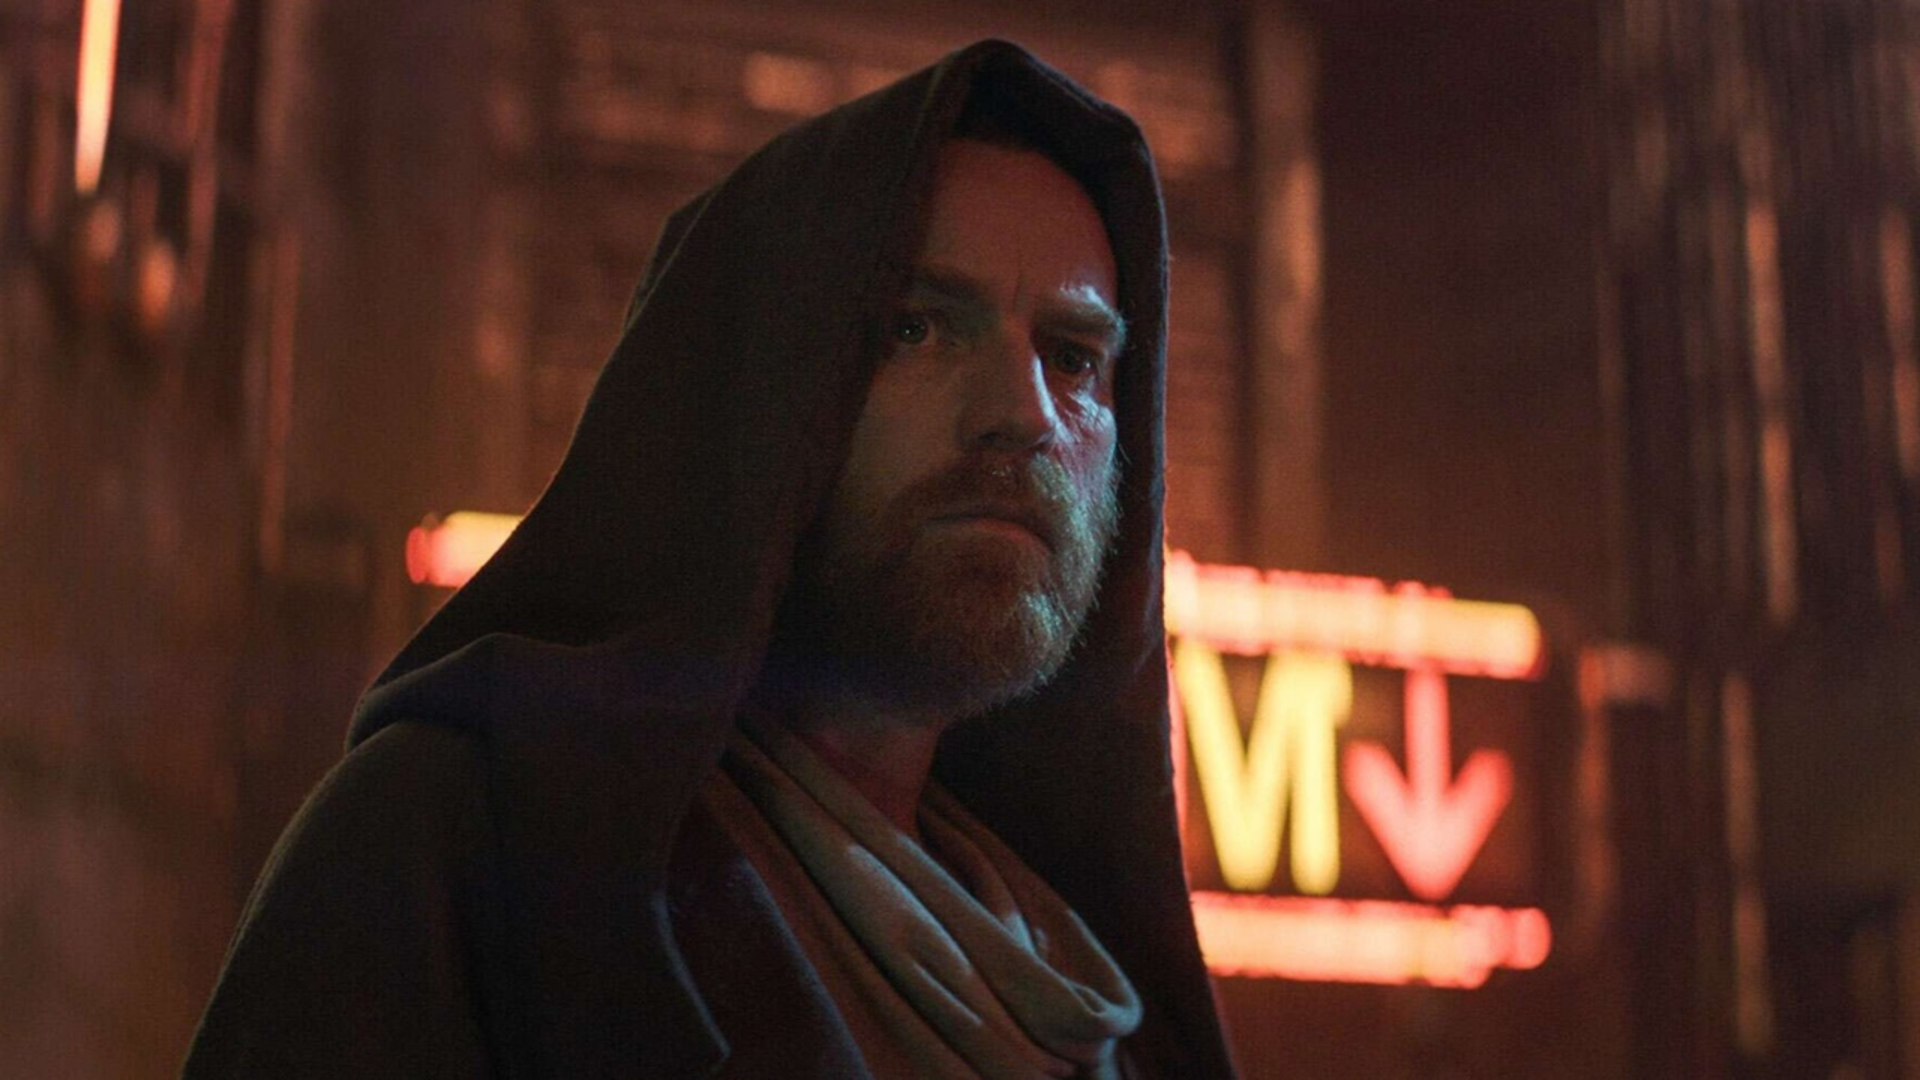 Diretora aborda possibilidade de 2ª temporada para Obi-Wan Kenobi